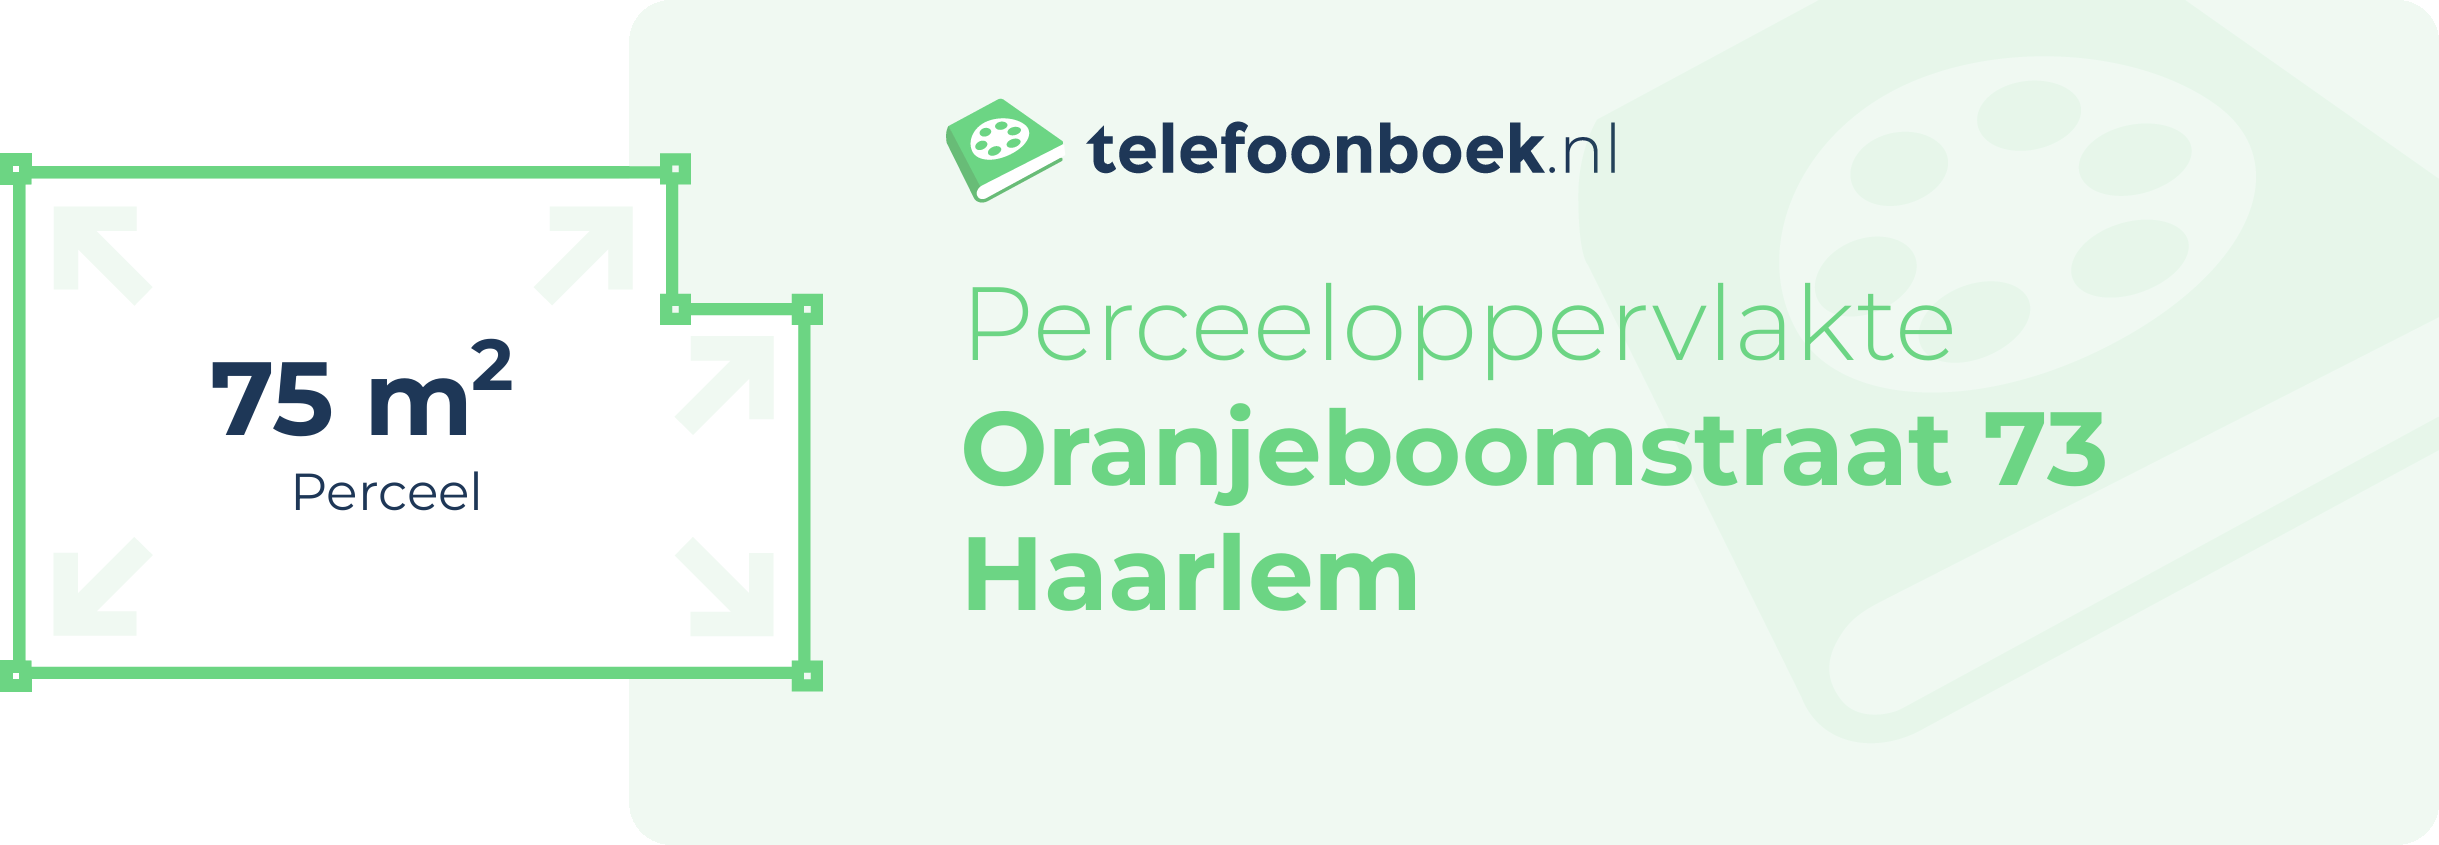 Perceeloppervlakte Oranjeboomstraat 73 Haarlem